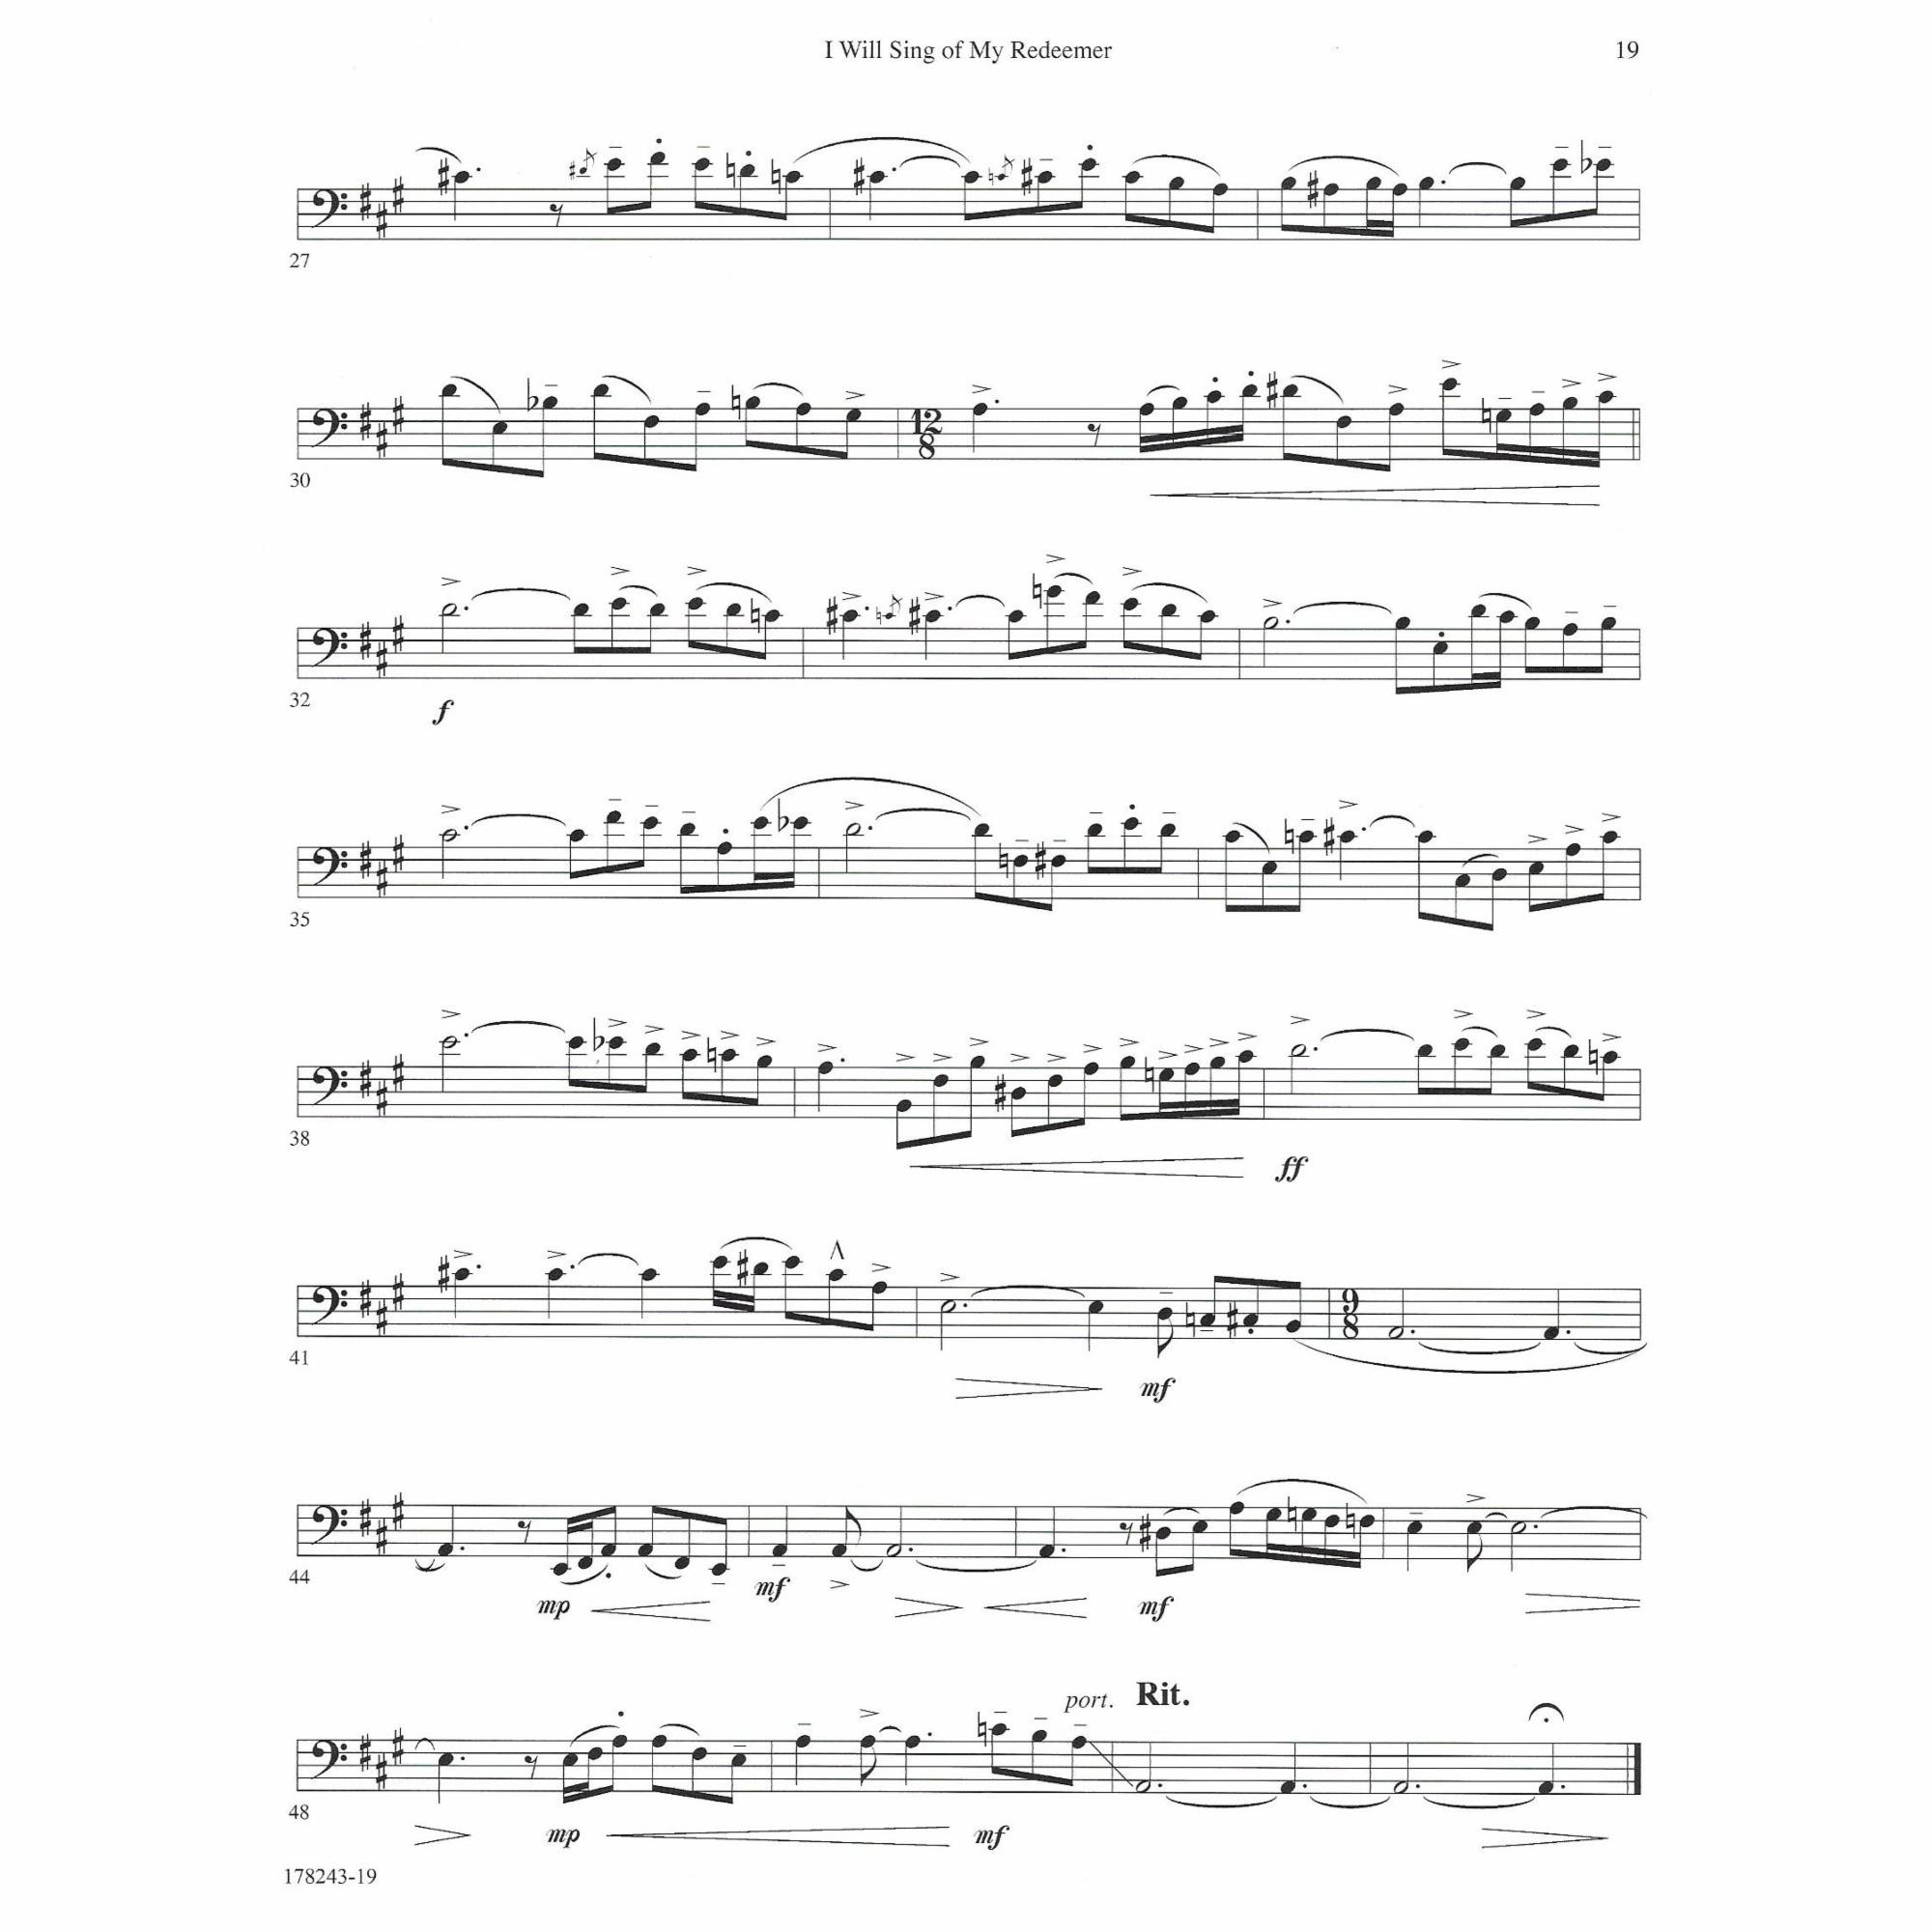 Sample: Cello (Pg. 19)